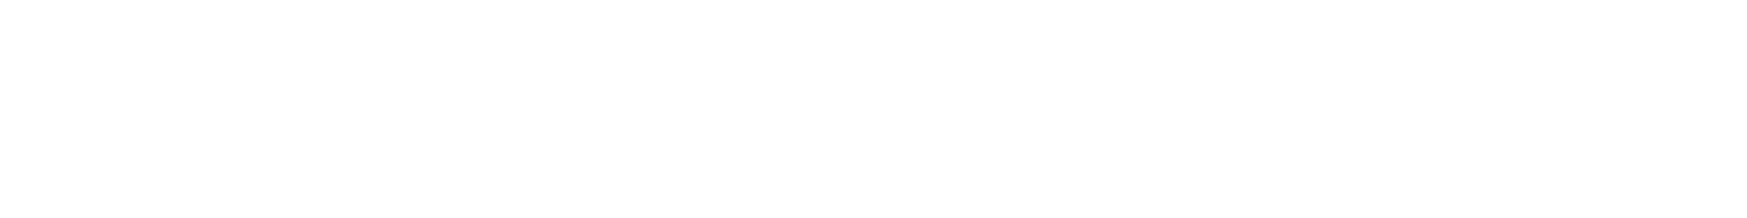 Pi-Star Logo